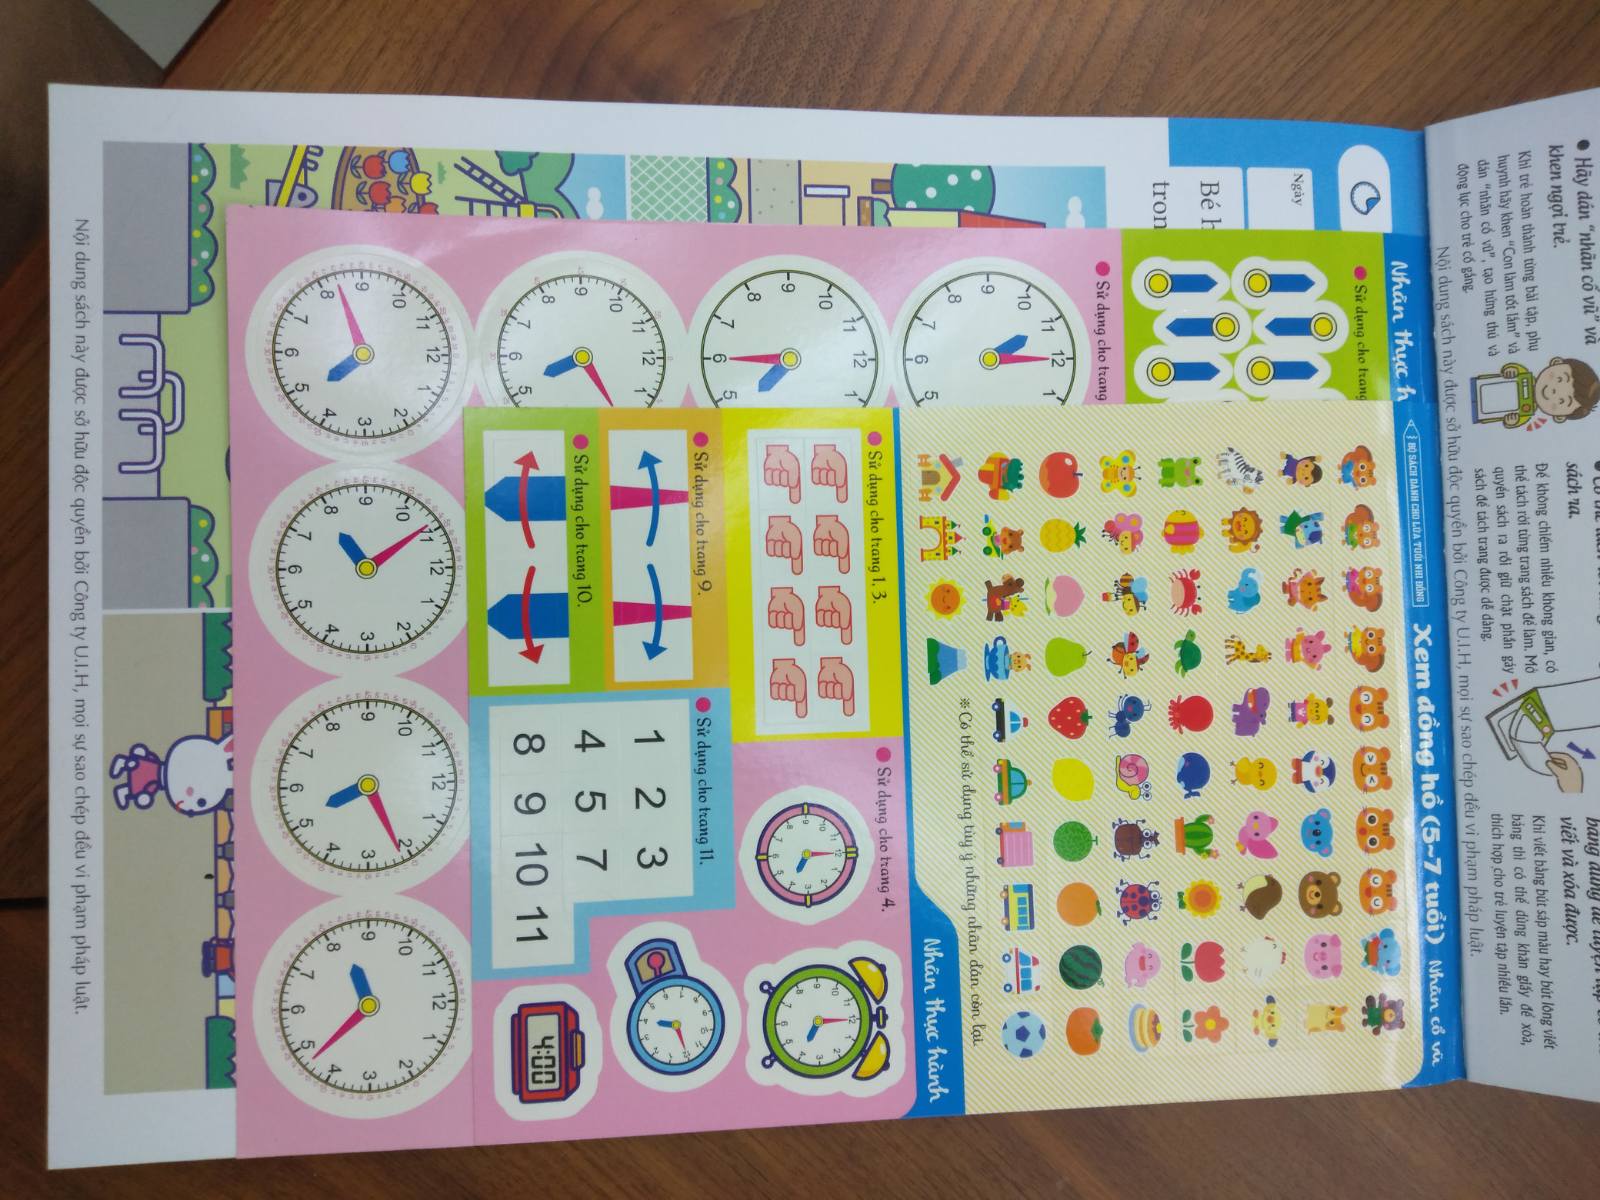 Xem đồng hồ (5~7 tuổi) – Giáo dục Nhật Bản – Bộ sách dành cho lứa tuổi nhi đồng – Thích hợp cho trẻ bắt đầu có hứng thú với việc xem đồng hồ